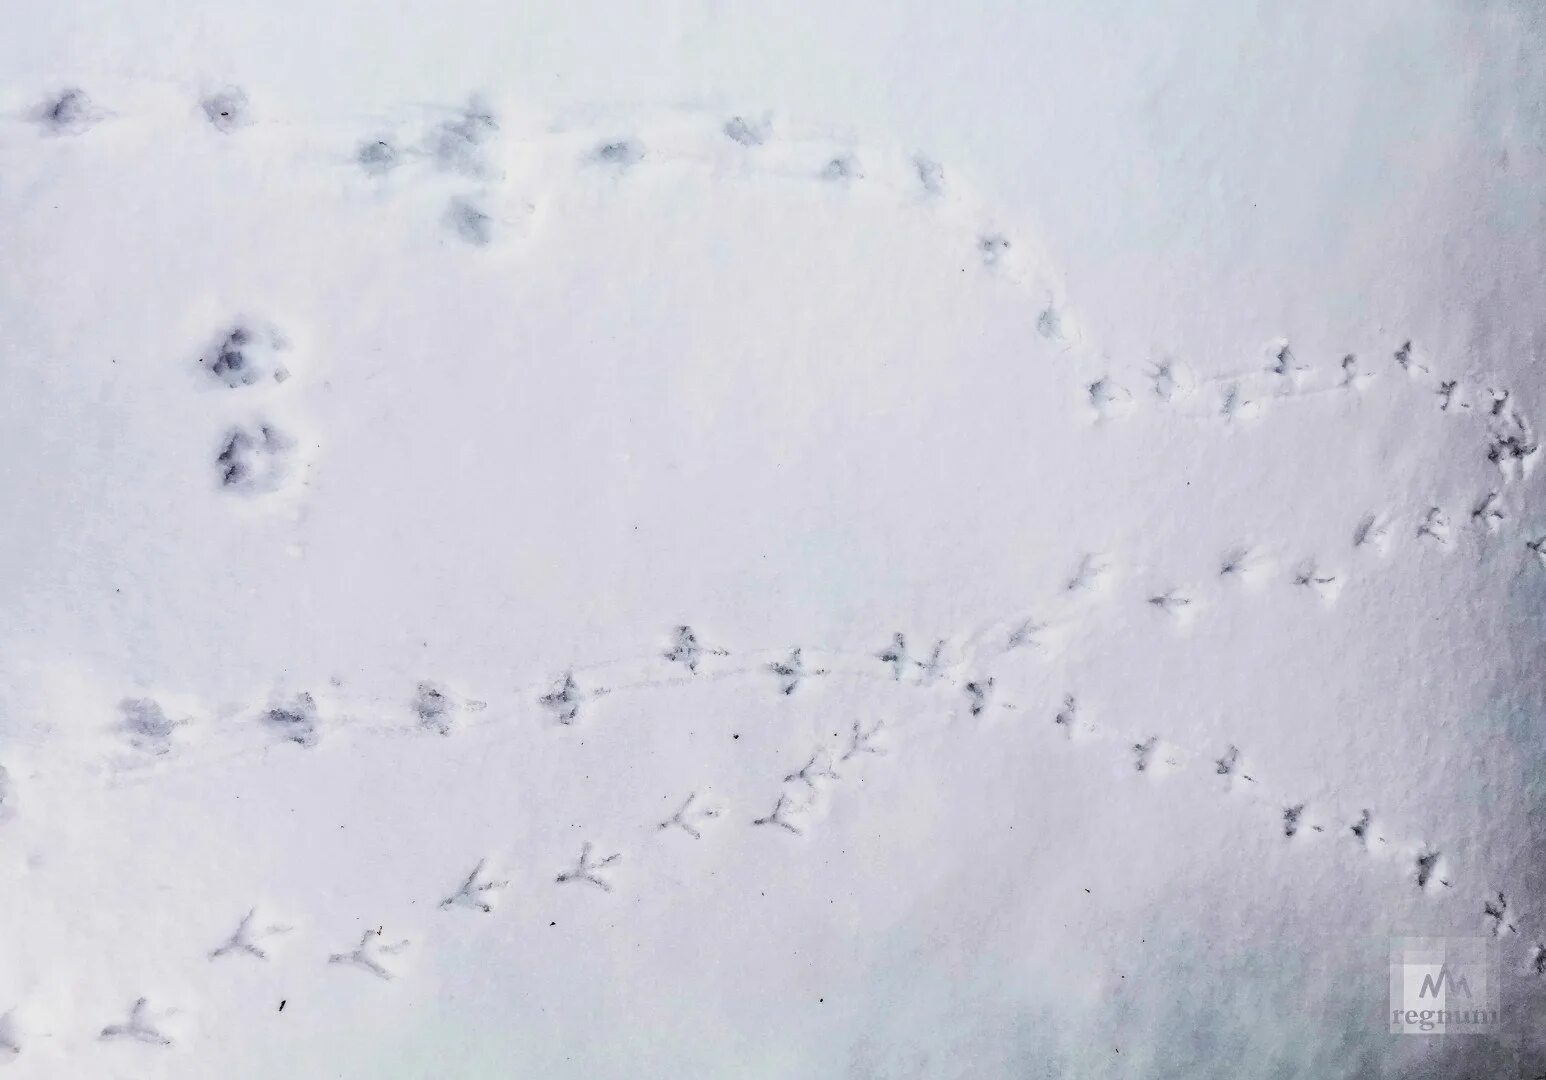 Следы голубя. Птичьи следы на снегу. Следы ворона на снегу. Следы птиц на снегу. На снегу видны птичьи следы